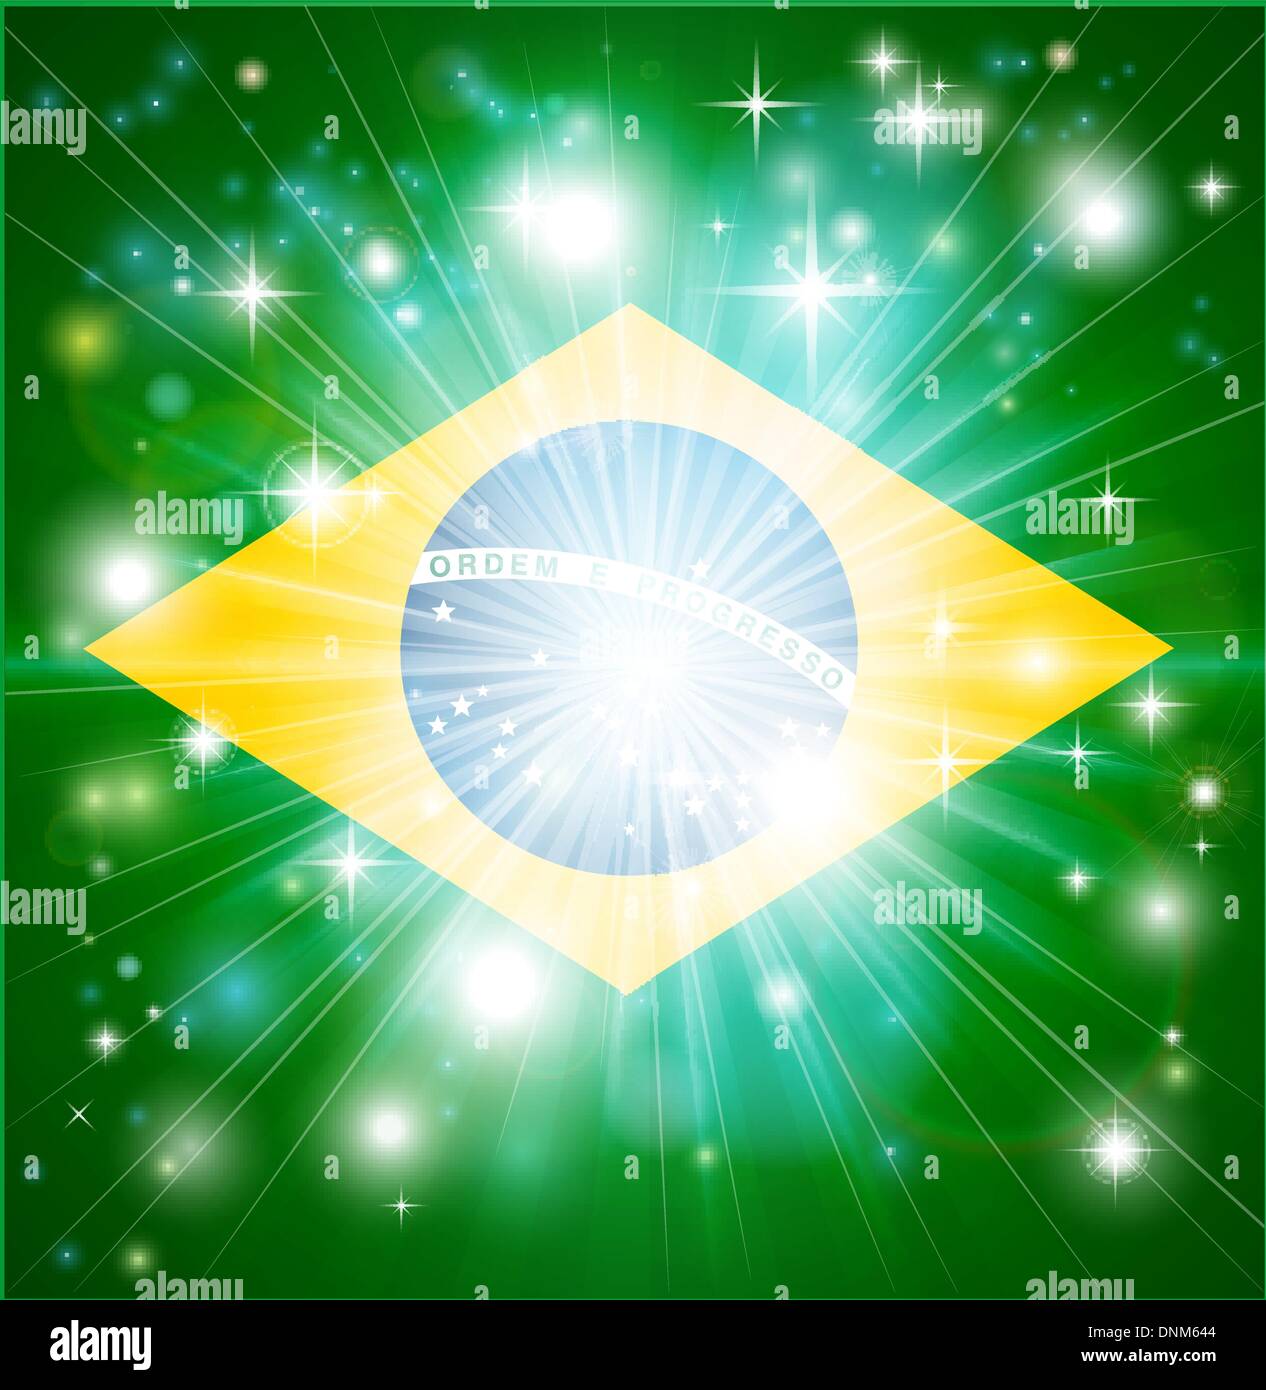 Drapeau du Brésil avec l'arrière-plan ou pyrotechniques light burst et copiez l'espace dans le centre Illustration de Vecteur